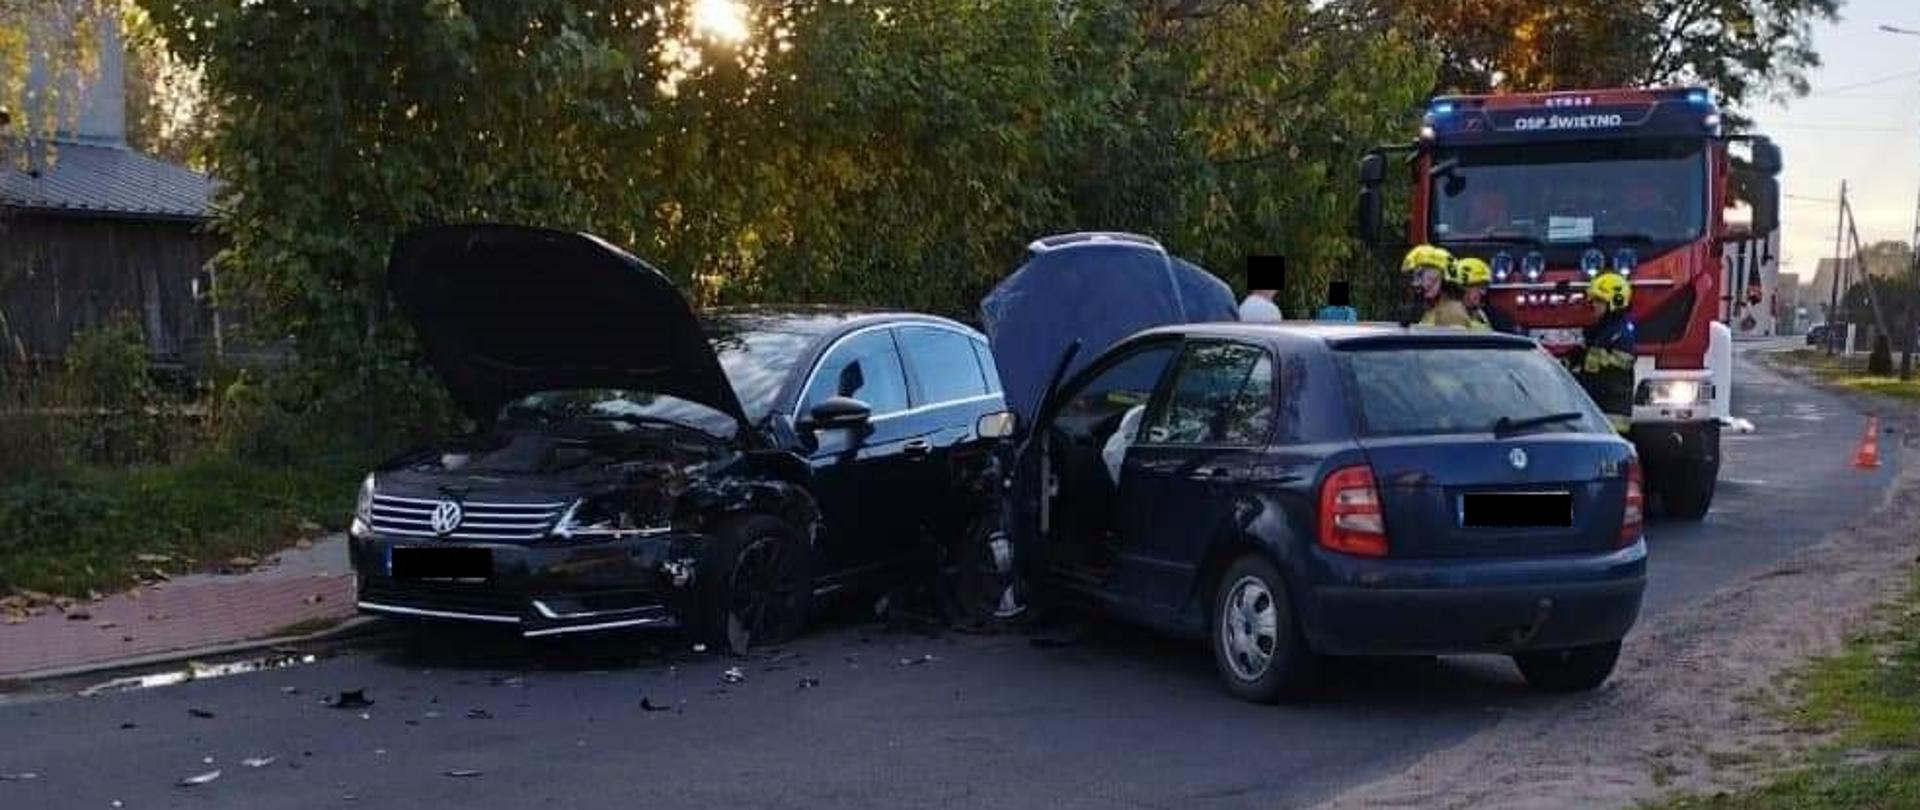 Zdjęcie przedstawia dwa samochody osobowe, rozbite, stojące na drodze. Za nimi znajduje się samochód strażacki.